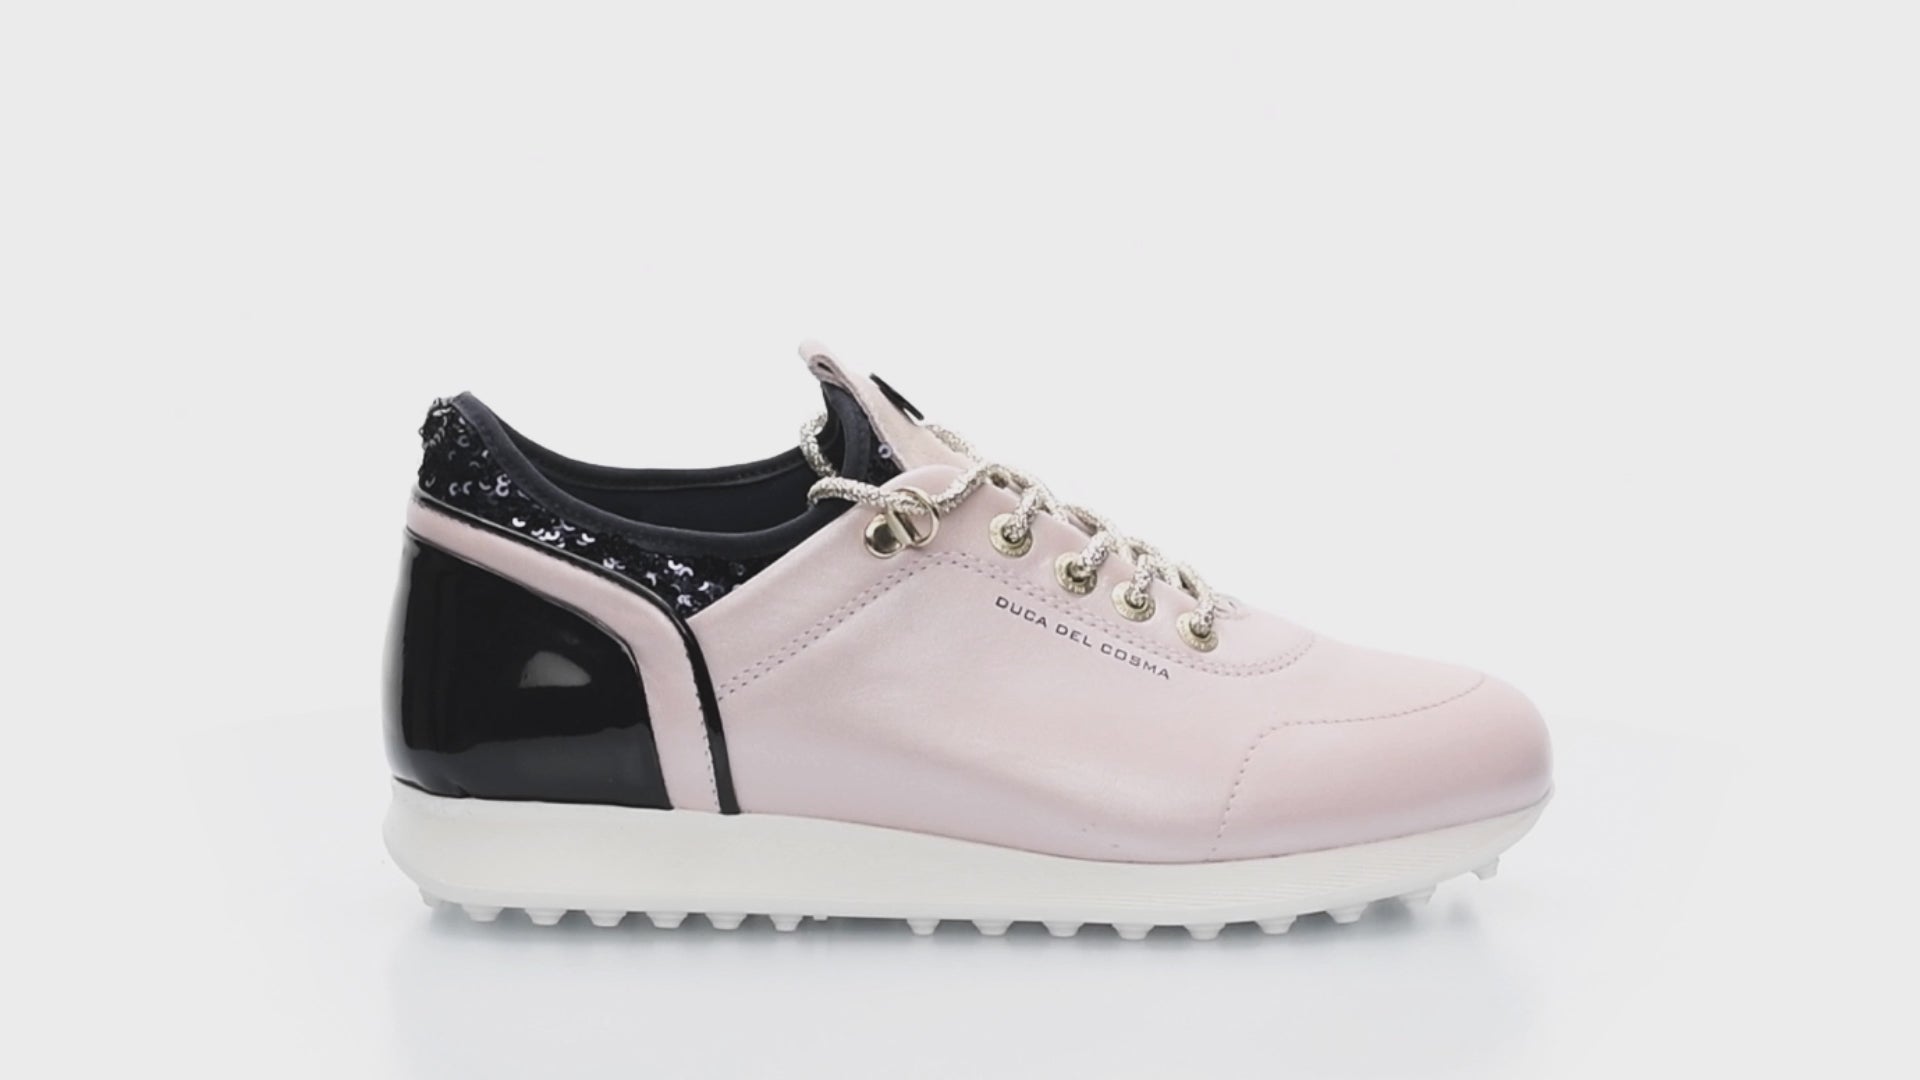 Pose Pink/Navy Women's Golf Shoe